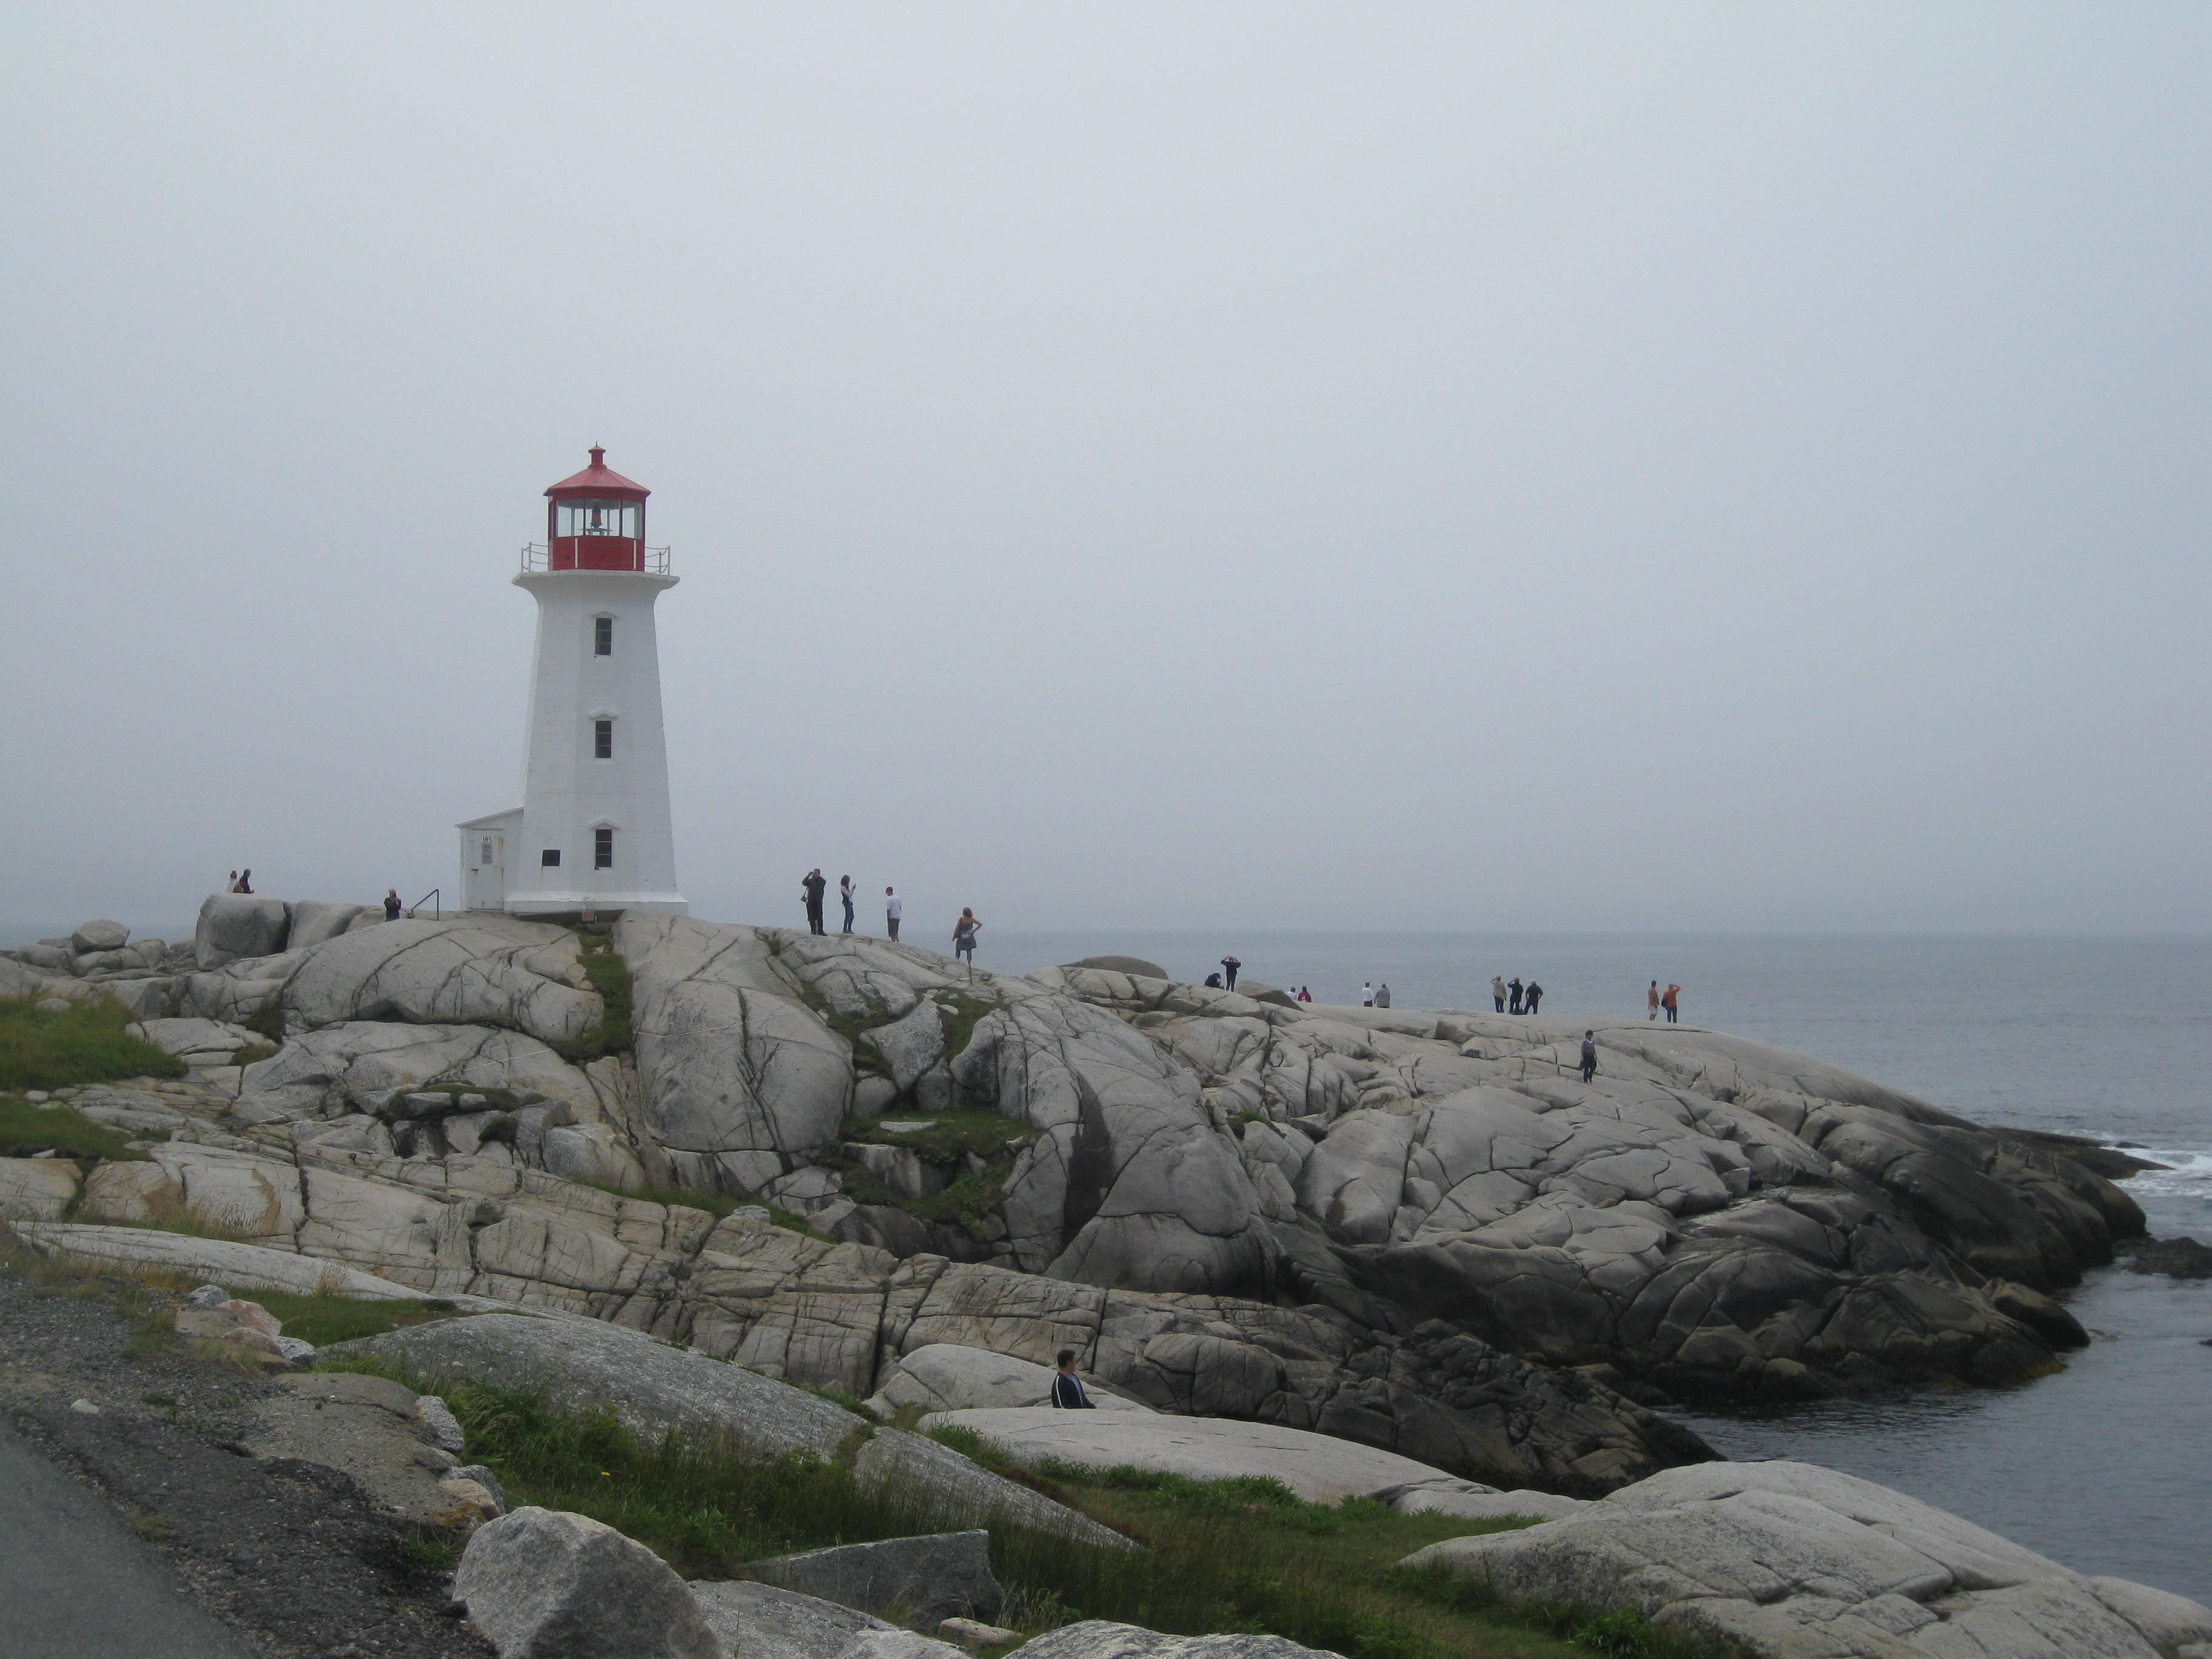 Nova Scotia: a photo blog